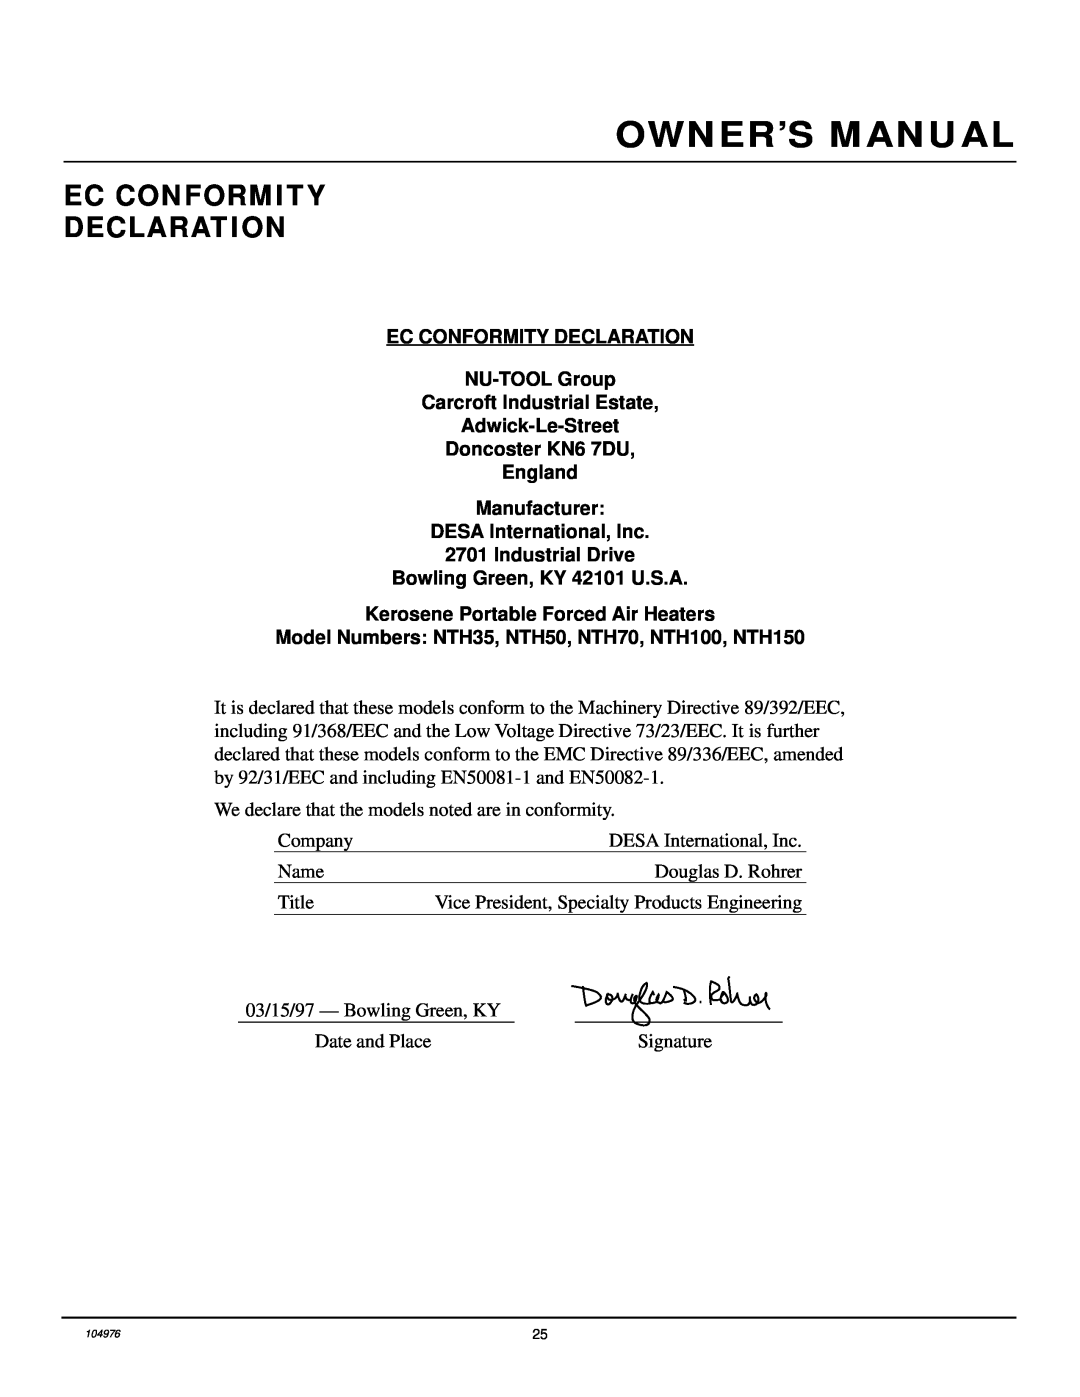 Desa NTH150, NTH50, NTH100, NTH70, NTH35 owner manual Ec Conformity Declaration 